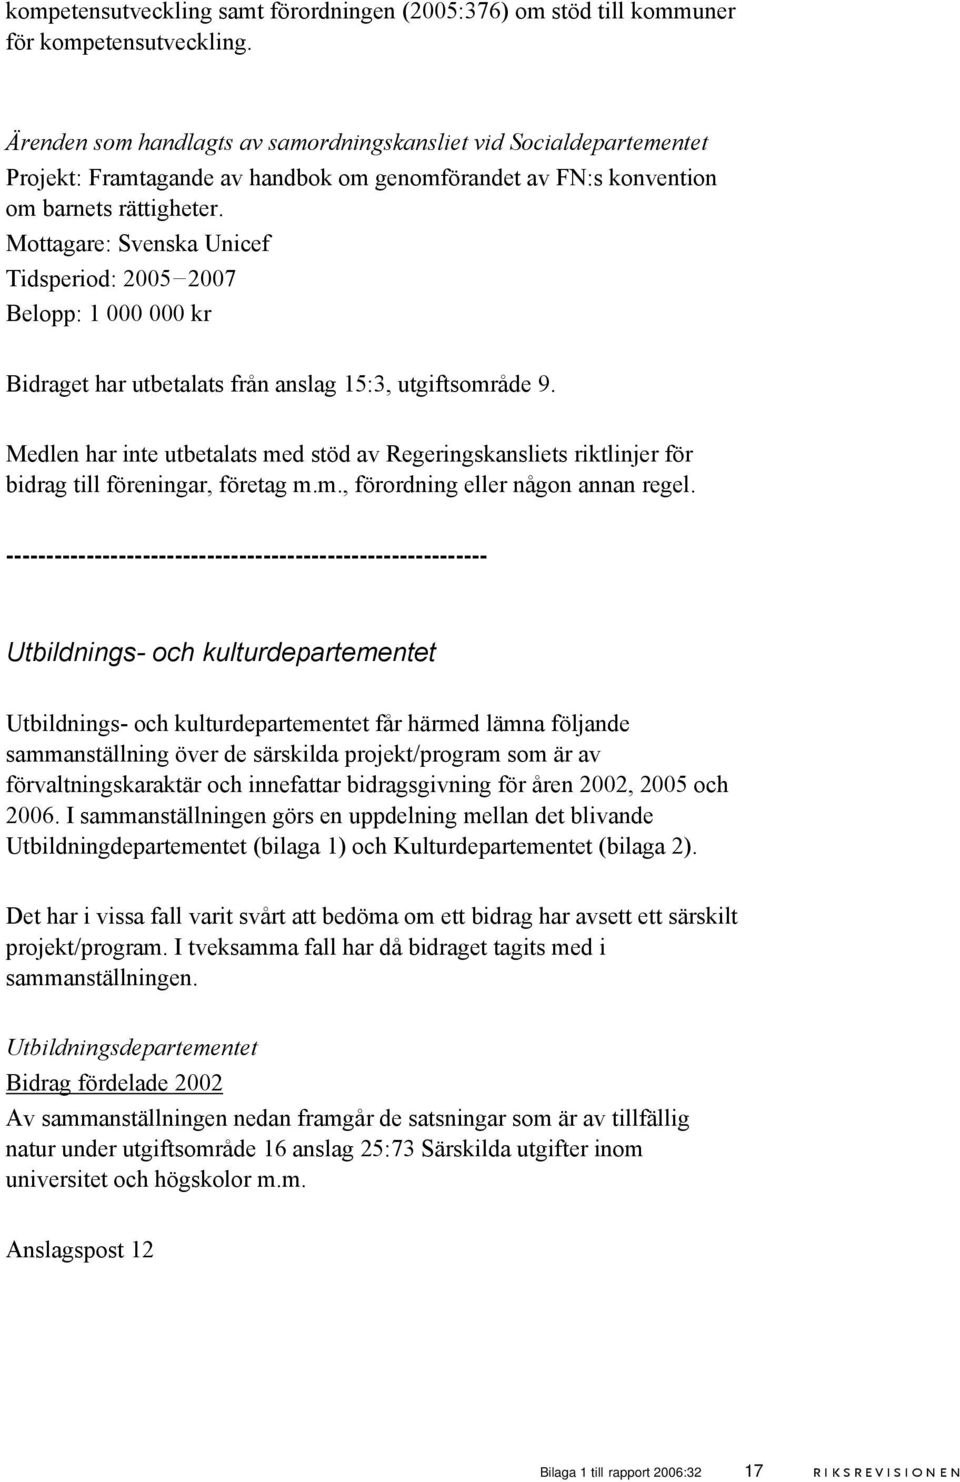 Mottagare: Svenska Unicef Tidsperiod: 2005 2007 Belopp: 1 000 000 kr Bidraget har utbetalats från anslag 15:3, utgiftsområde 9.